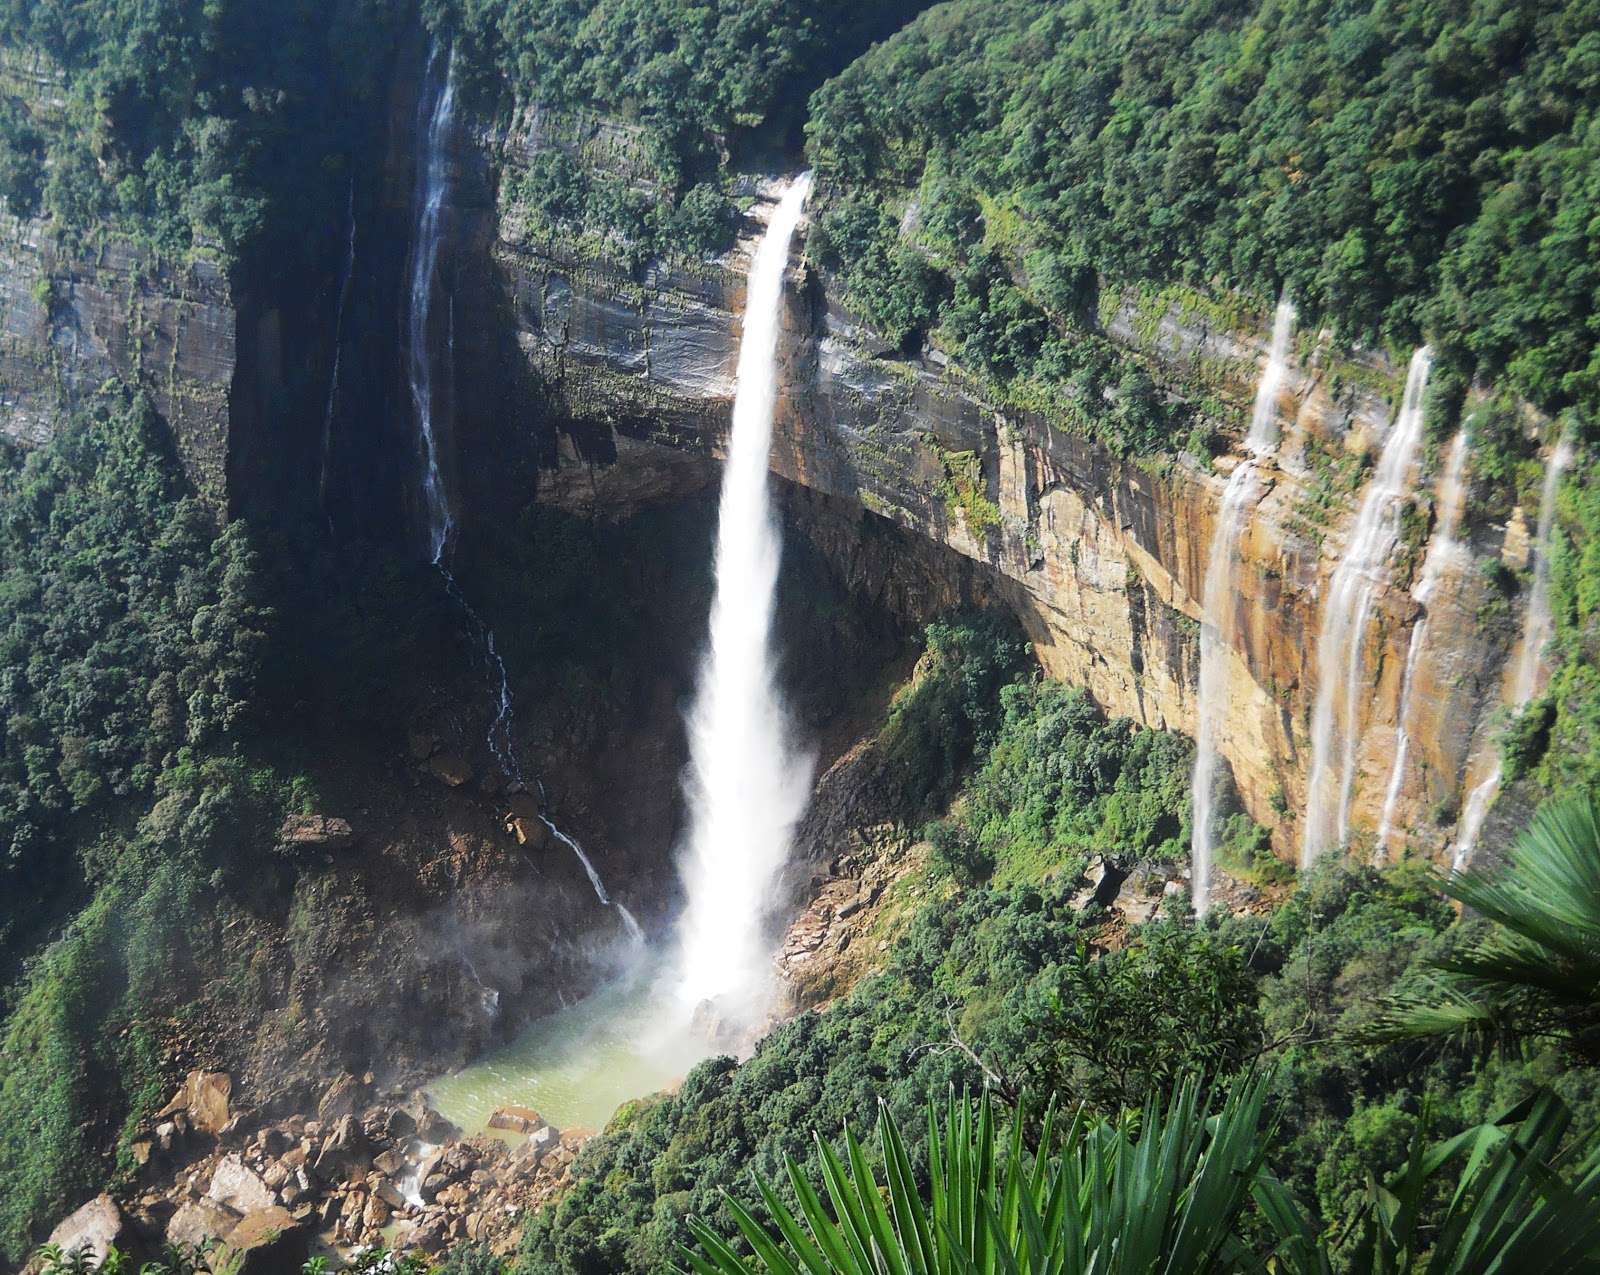 Nohkalikai Falls Photo 1